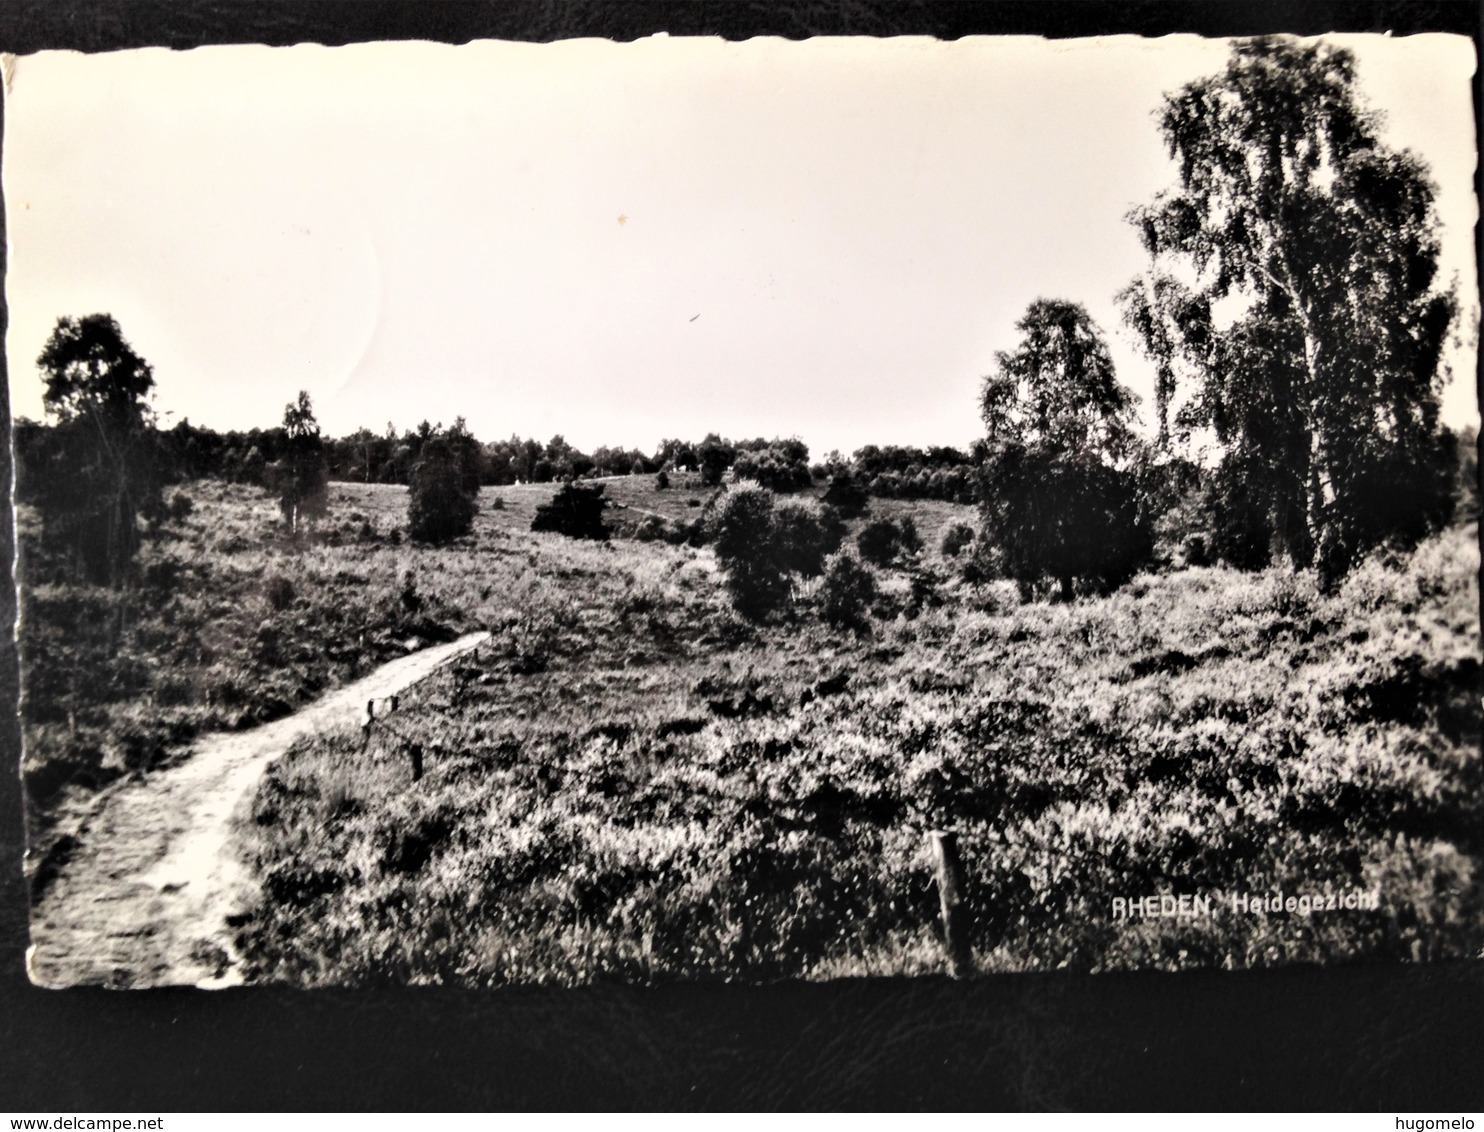 Netherlands, Circulated Postcard,  "Nature", "Landscapes", "'Rheden", 1967 - Rheden